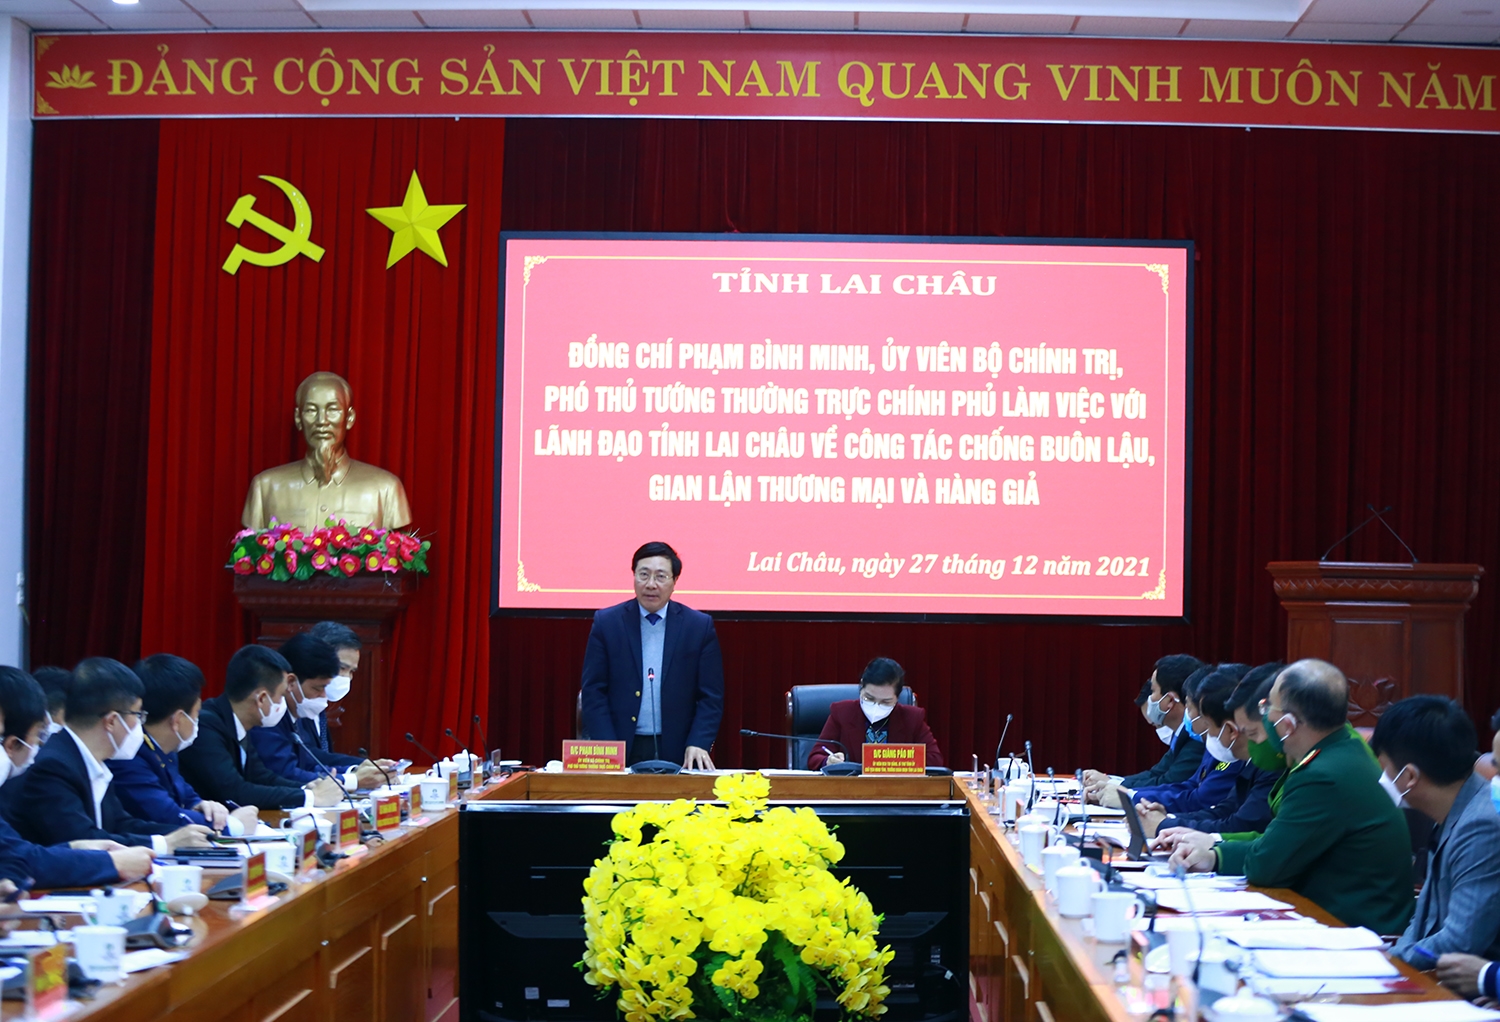 Phó Thủ tướng Thường trực Phạm Bình Minh làm việc với lãnh đạo tỉnh Lai Châu để nghe báo cáo về công tác chống buôn lậu, gian lận thương mại và hàng giả trên địa bàn tỉnh - Ảnh: VGP/Hải Minh